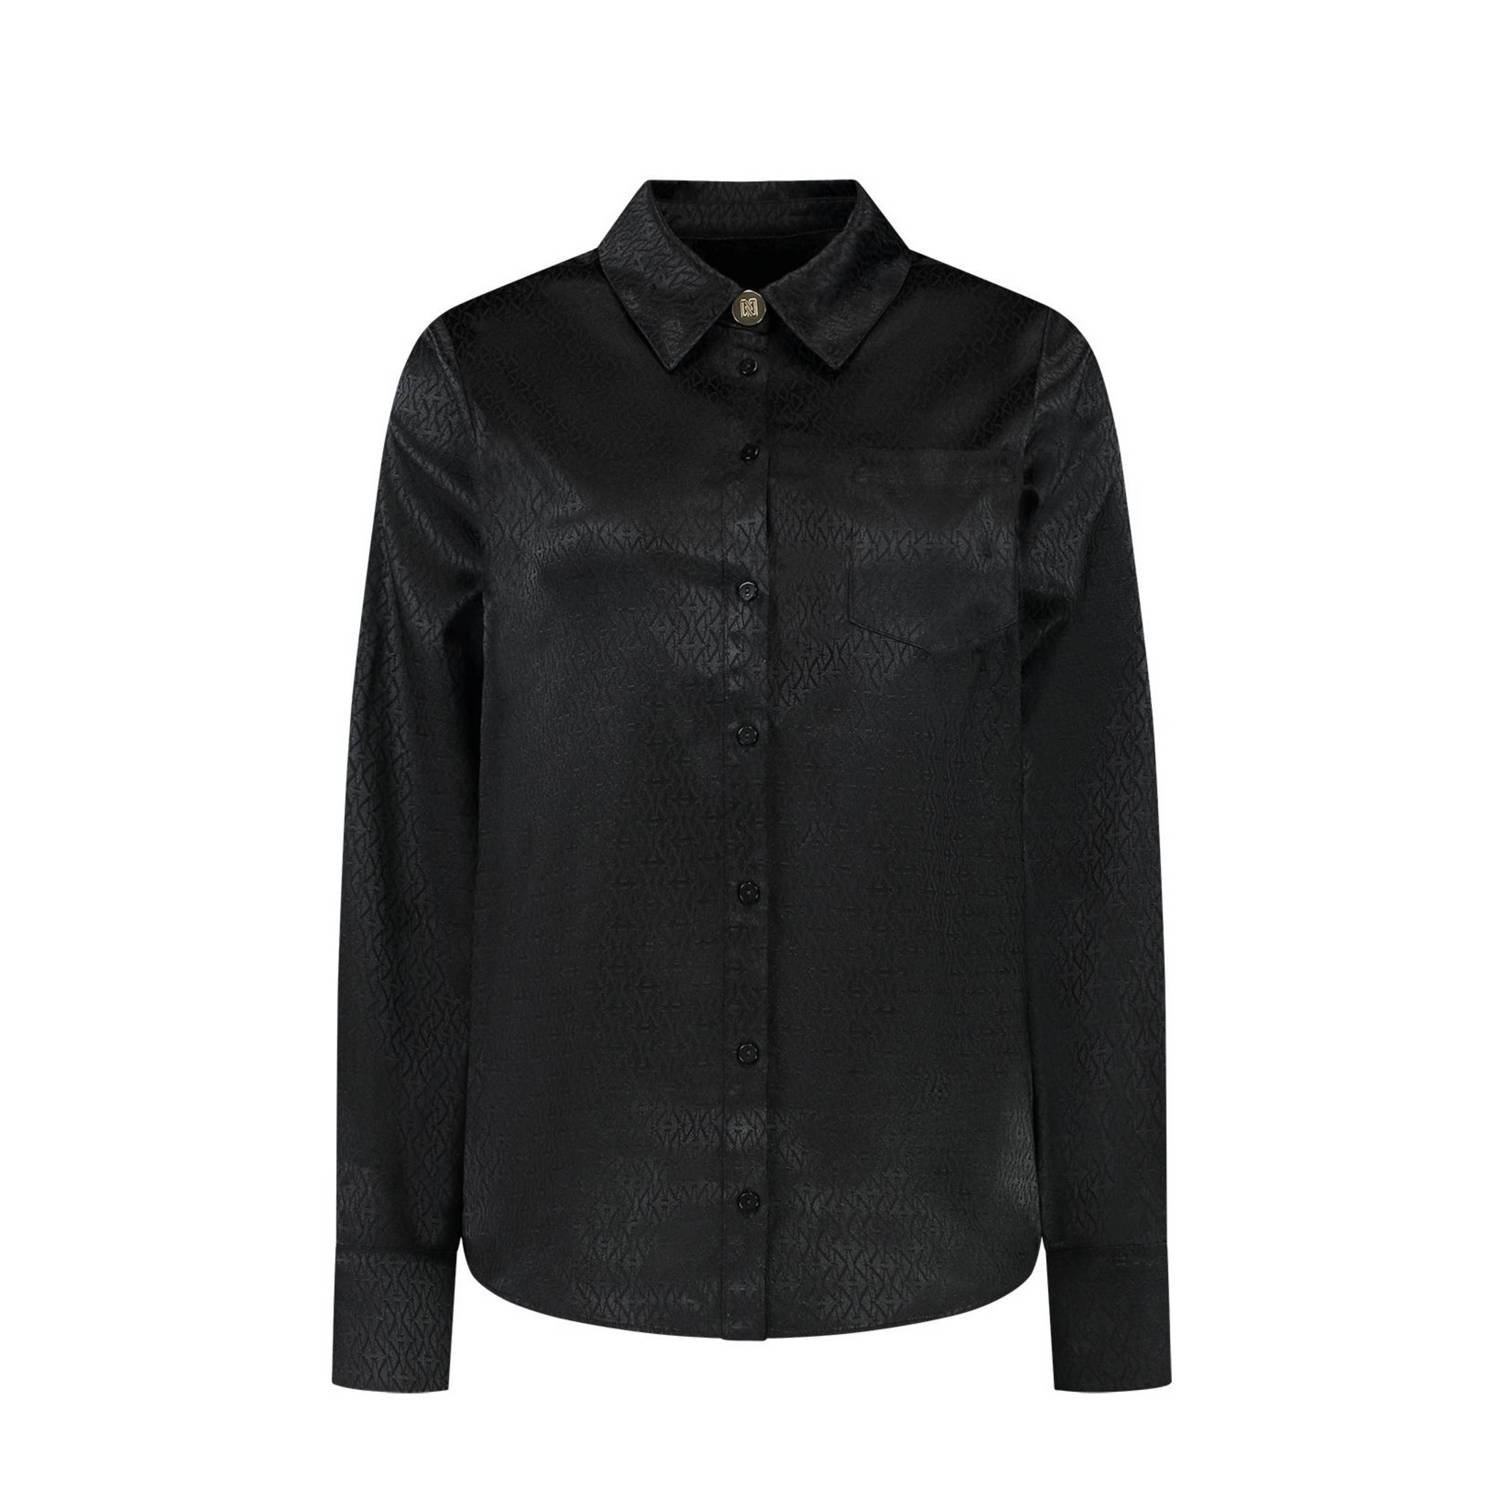 NIKKIE blouse Bangkok met logo zwart